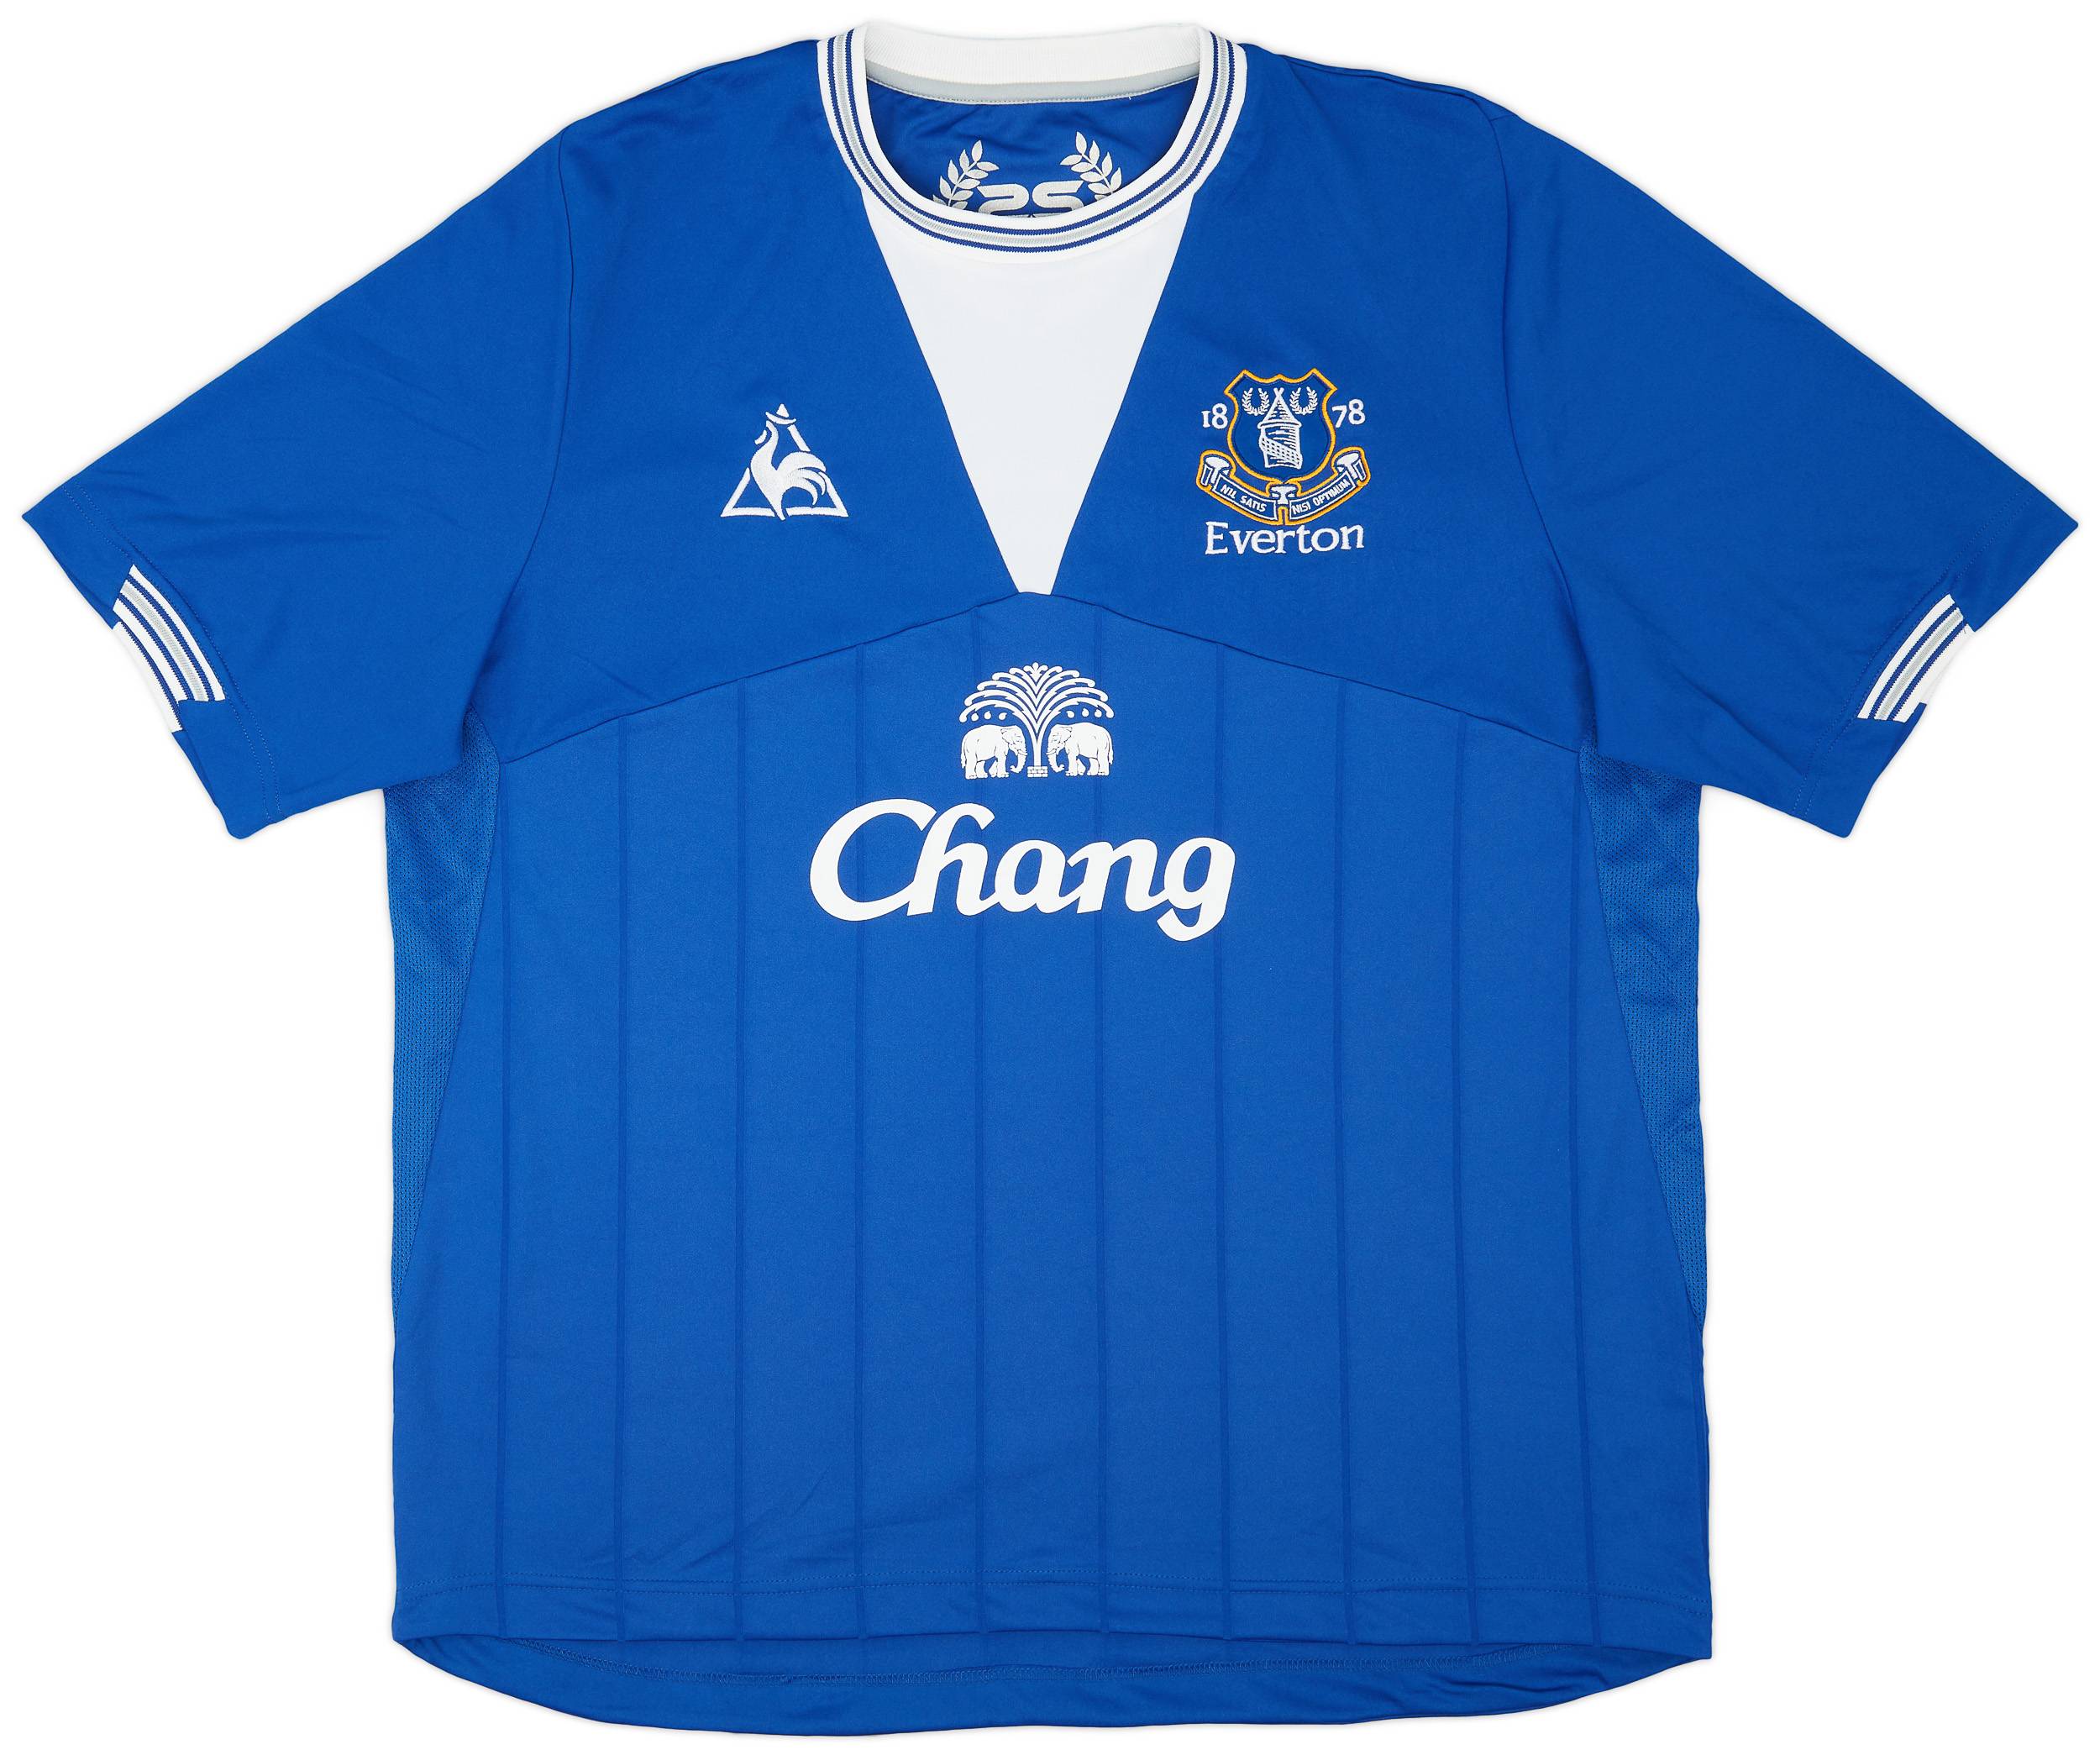 2009-10 Everton Home Shirt - 10/10 - (XL)